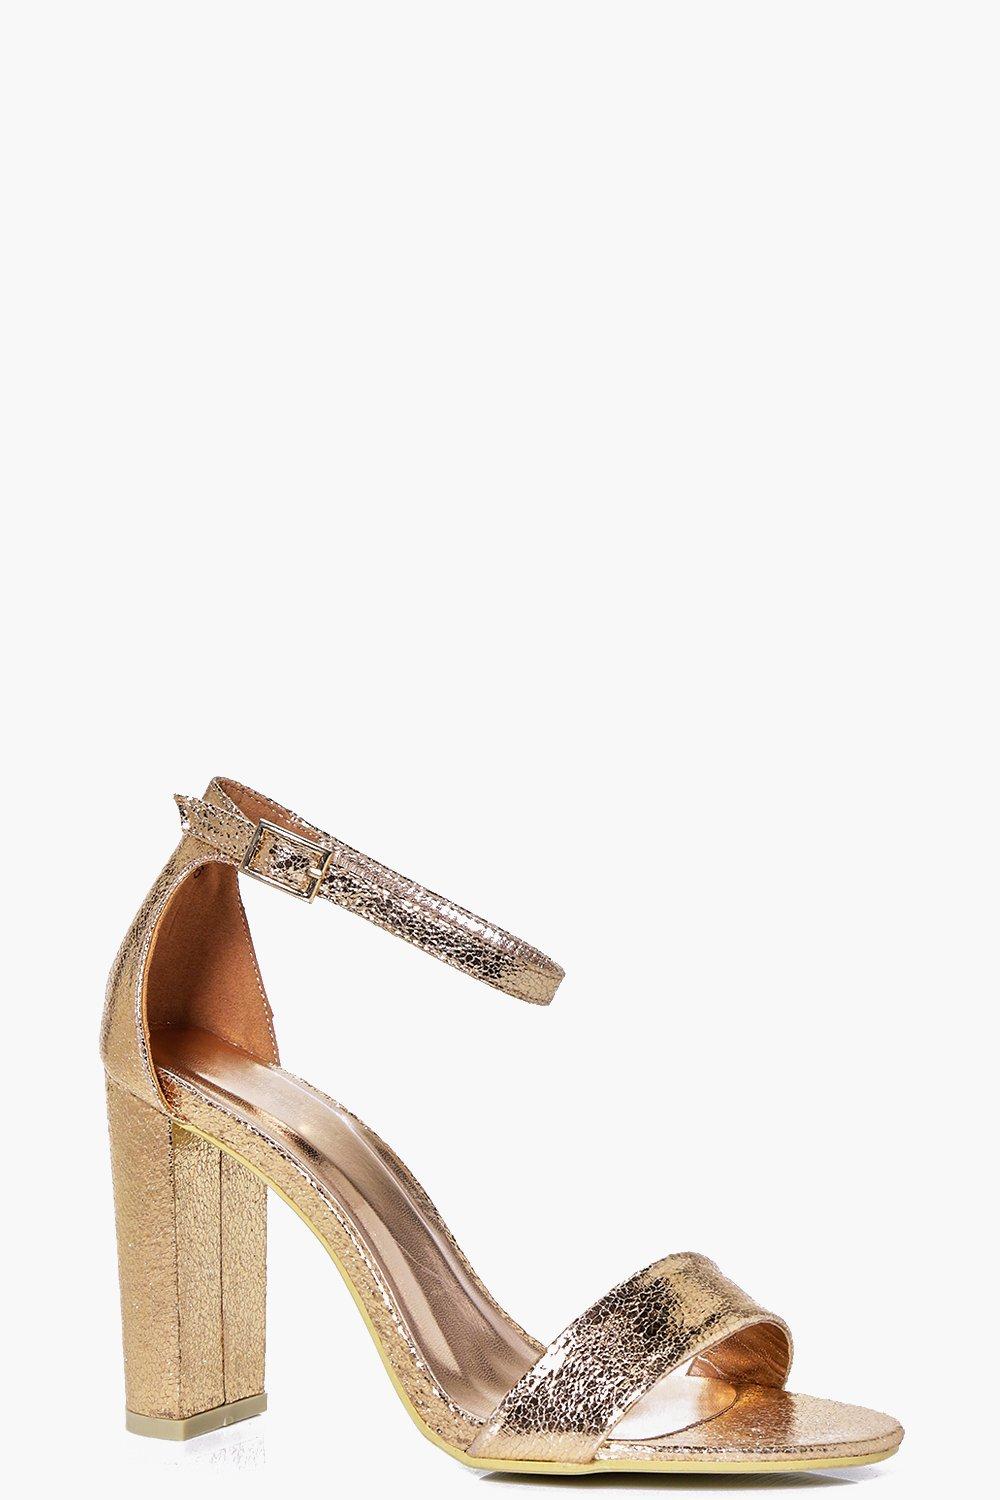 metallic block heels